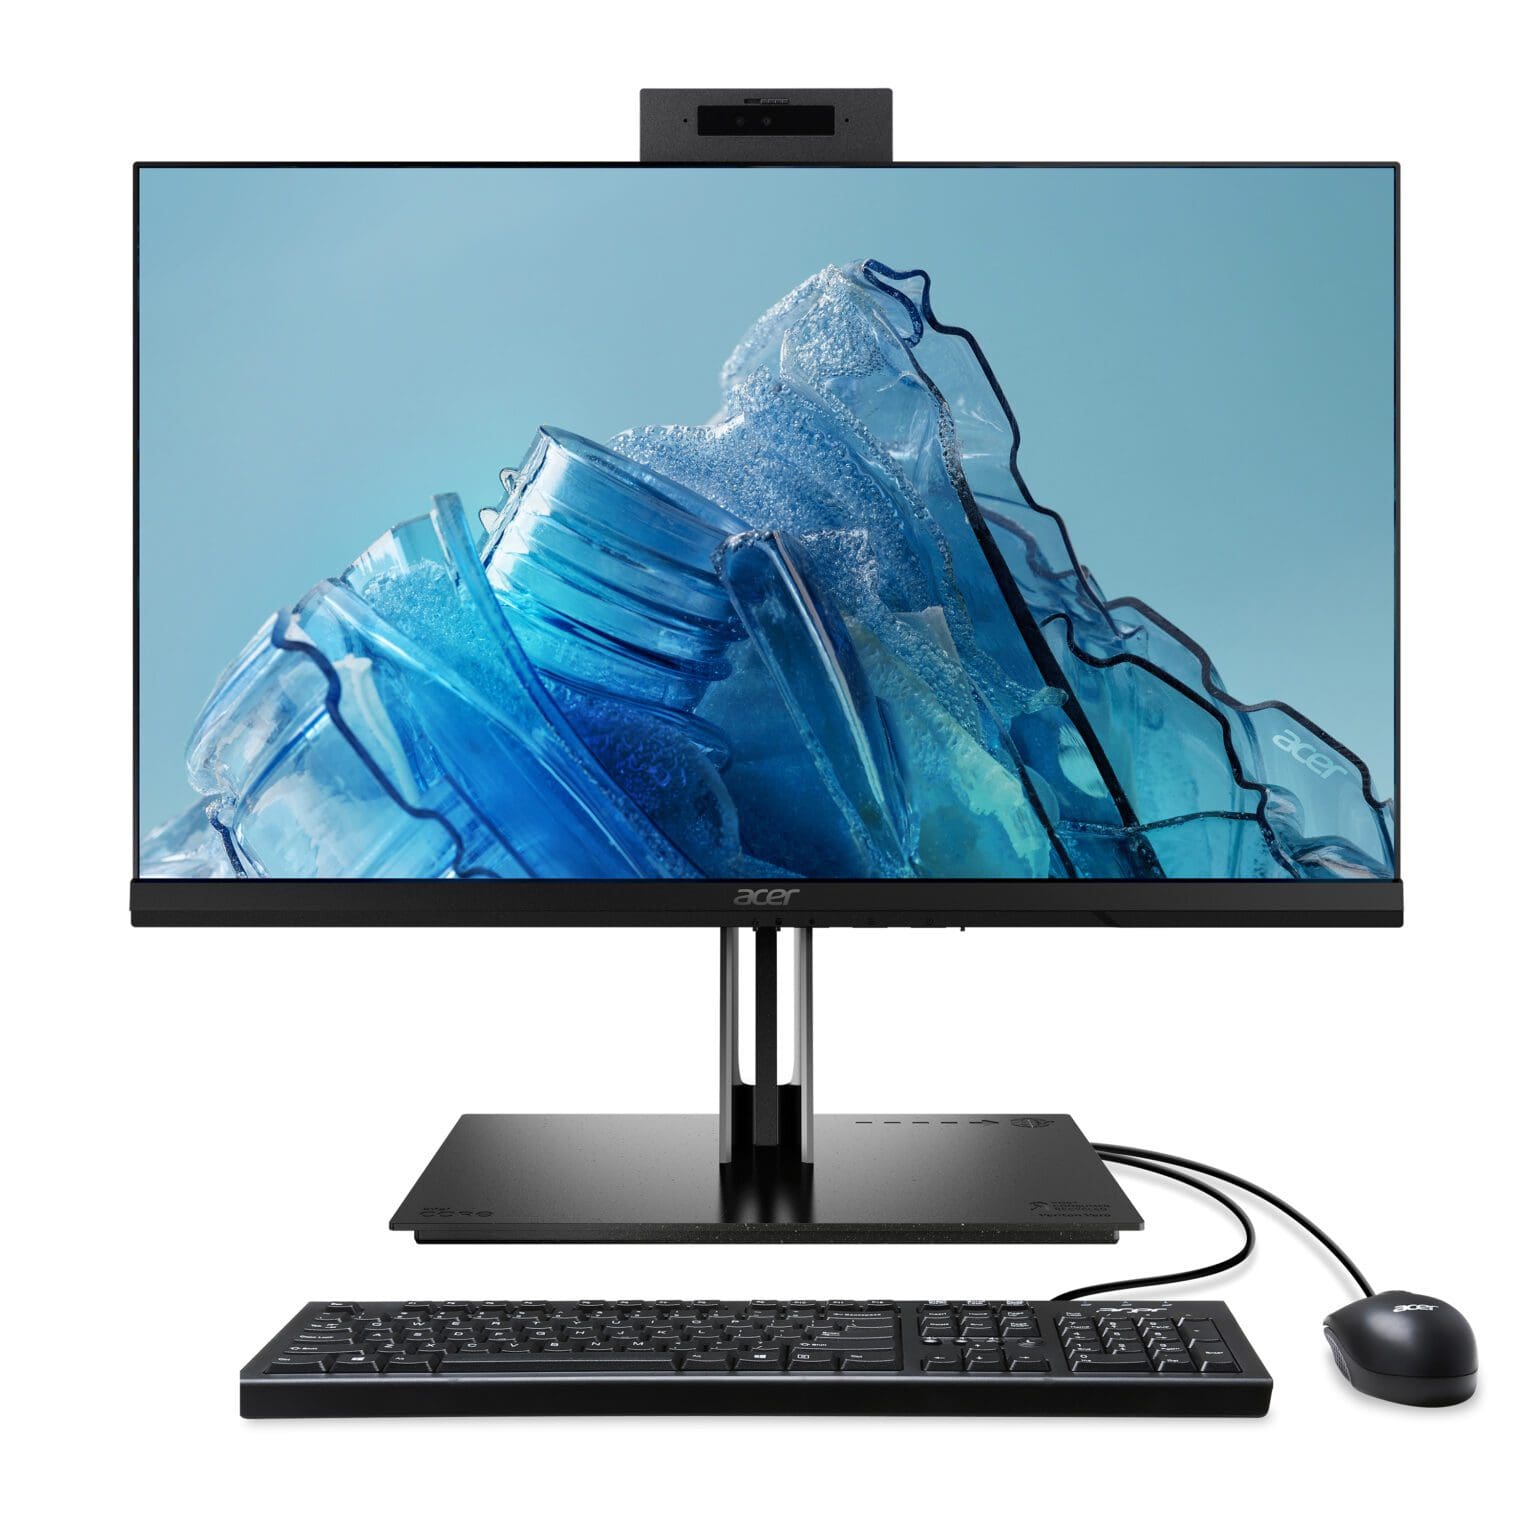 La familia Vero de Acer crece con nuevas laptops, desktop, monitores, proyectores y periféricos 4